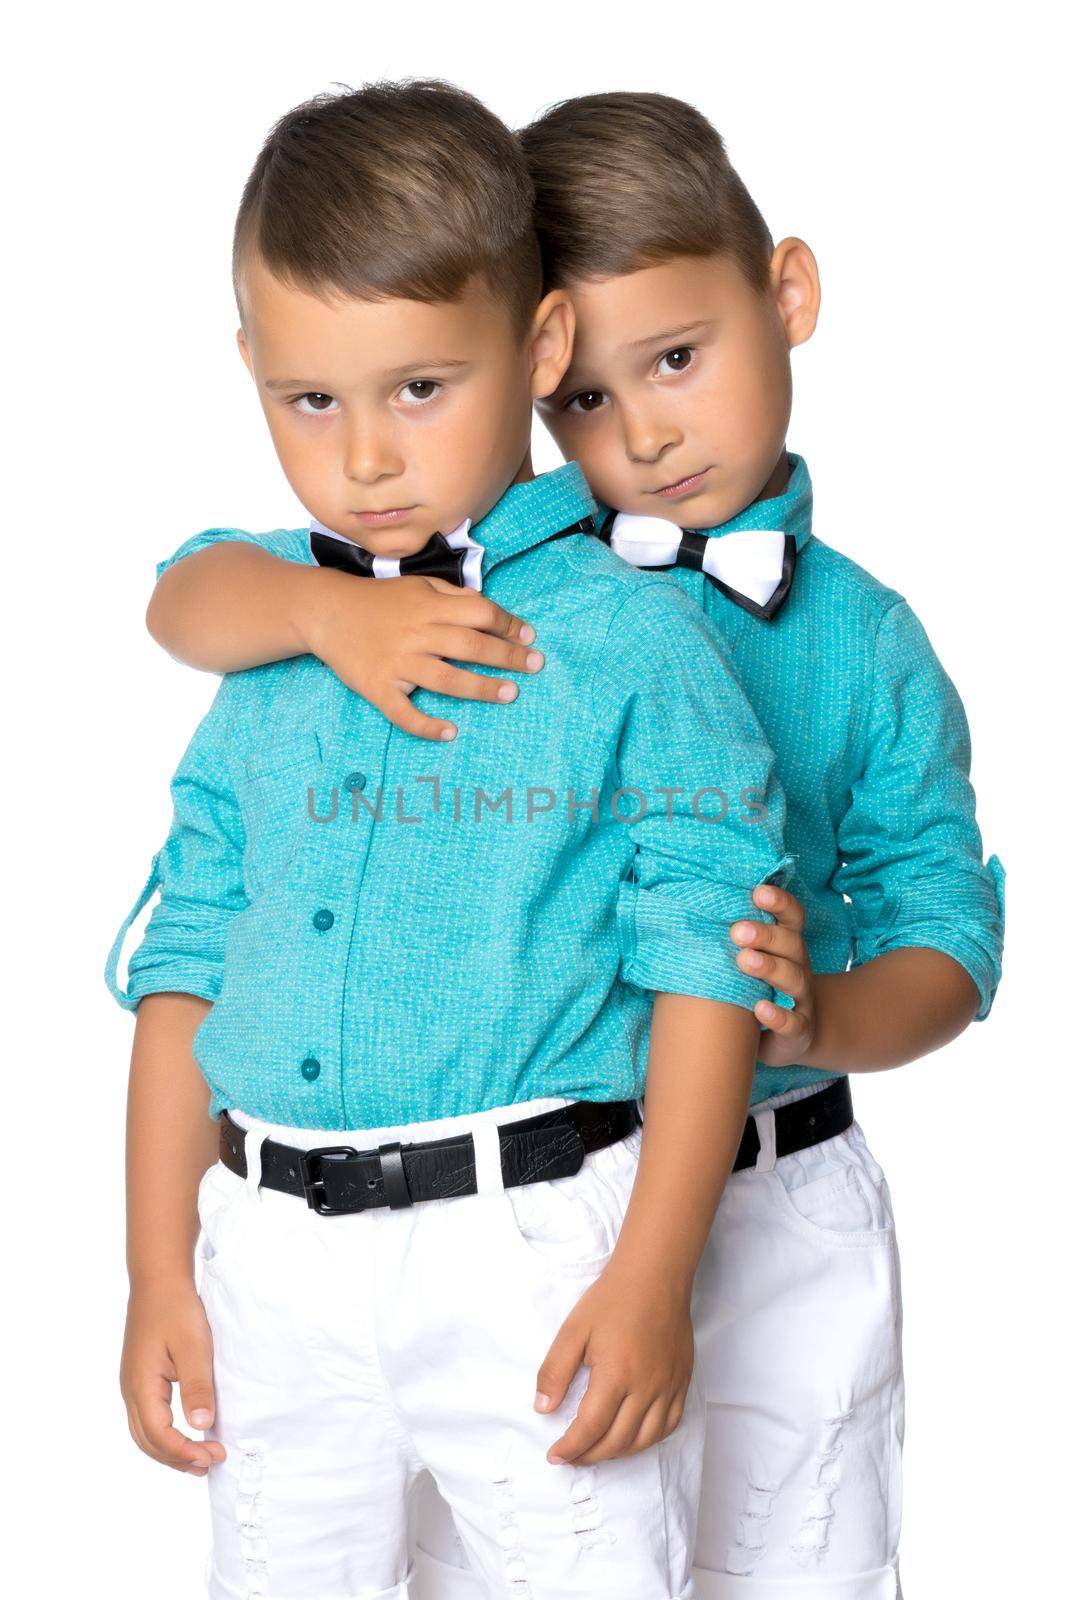 Two sad Gemini boys by kolesnikov_studio